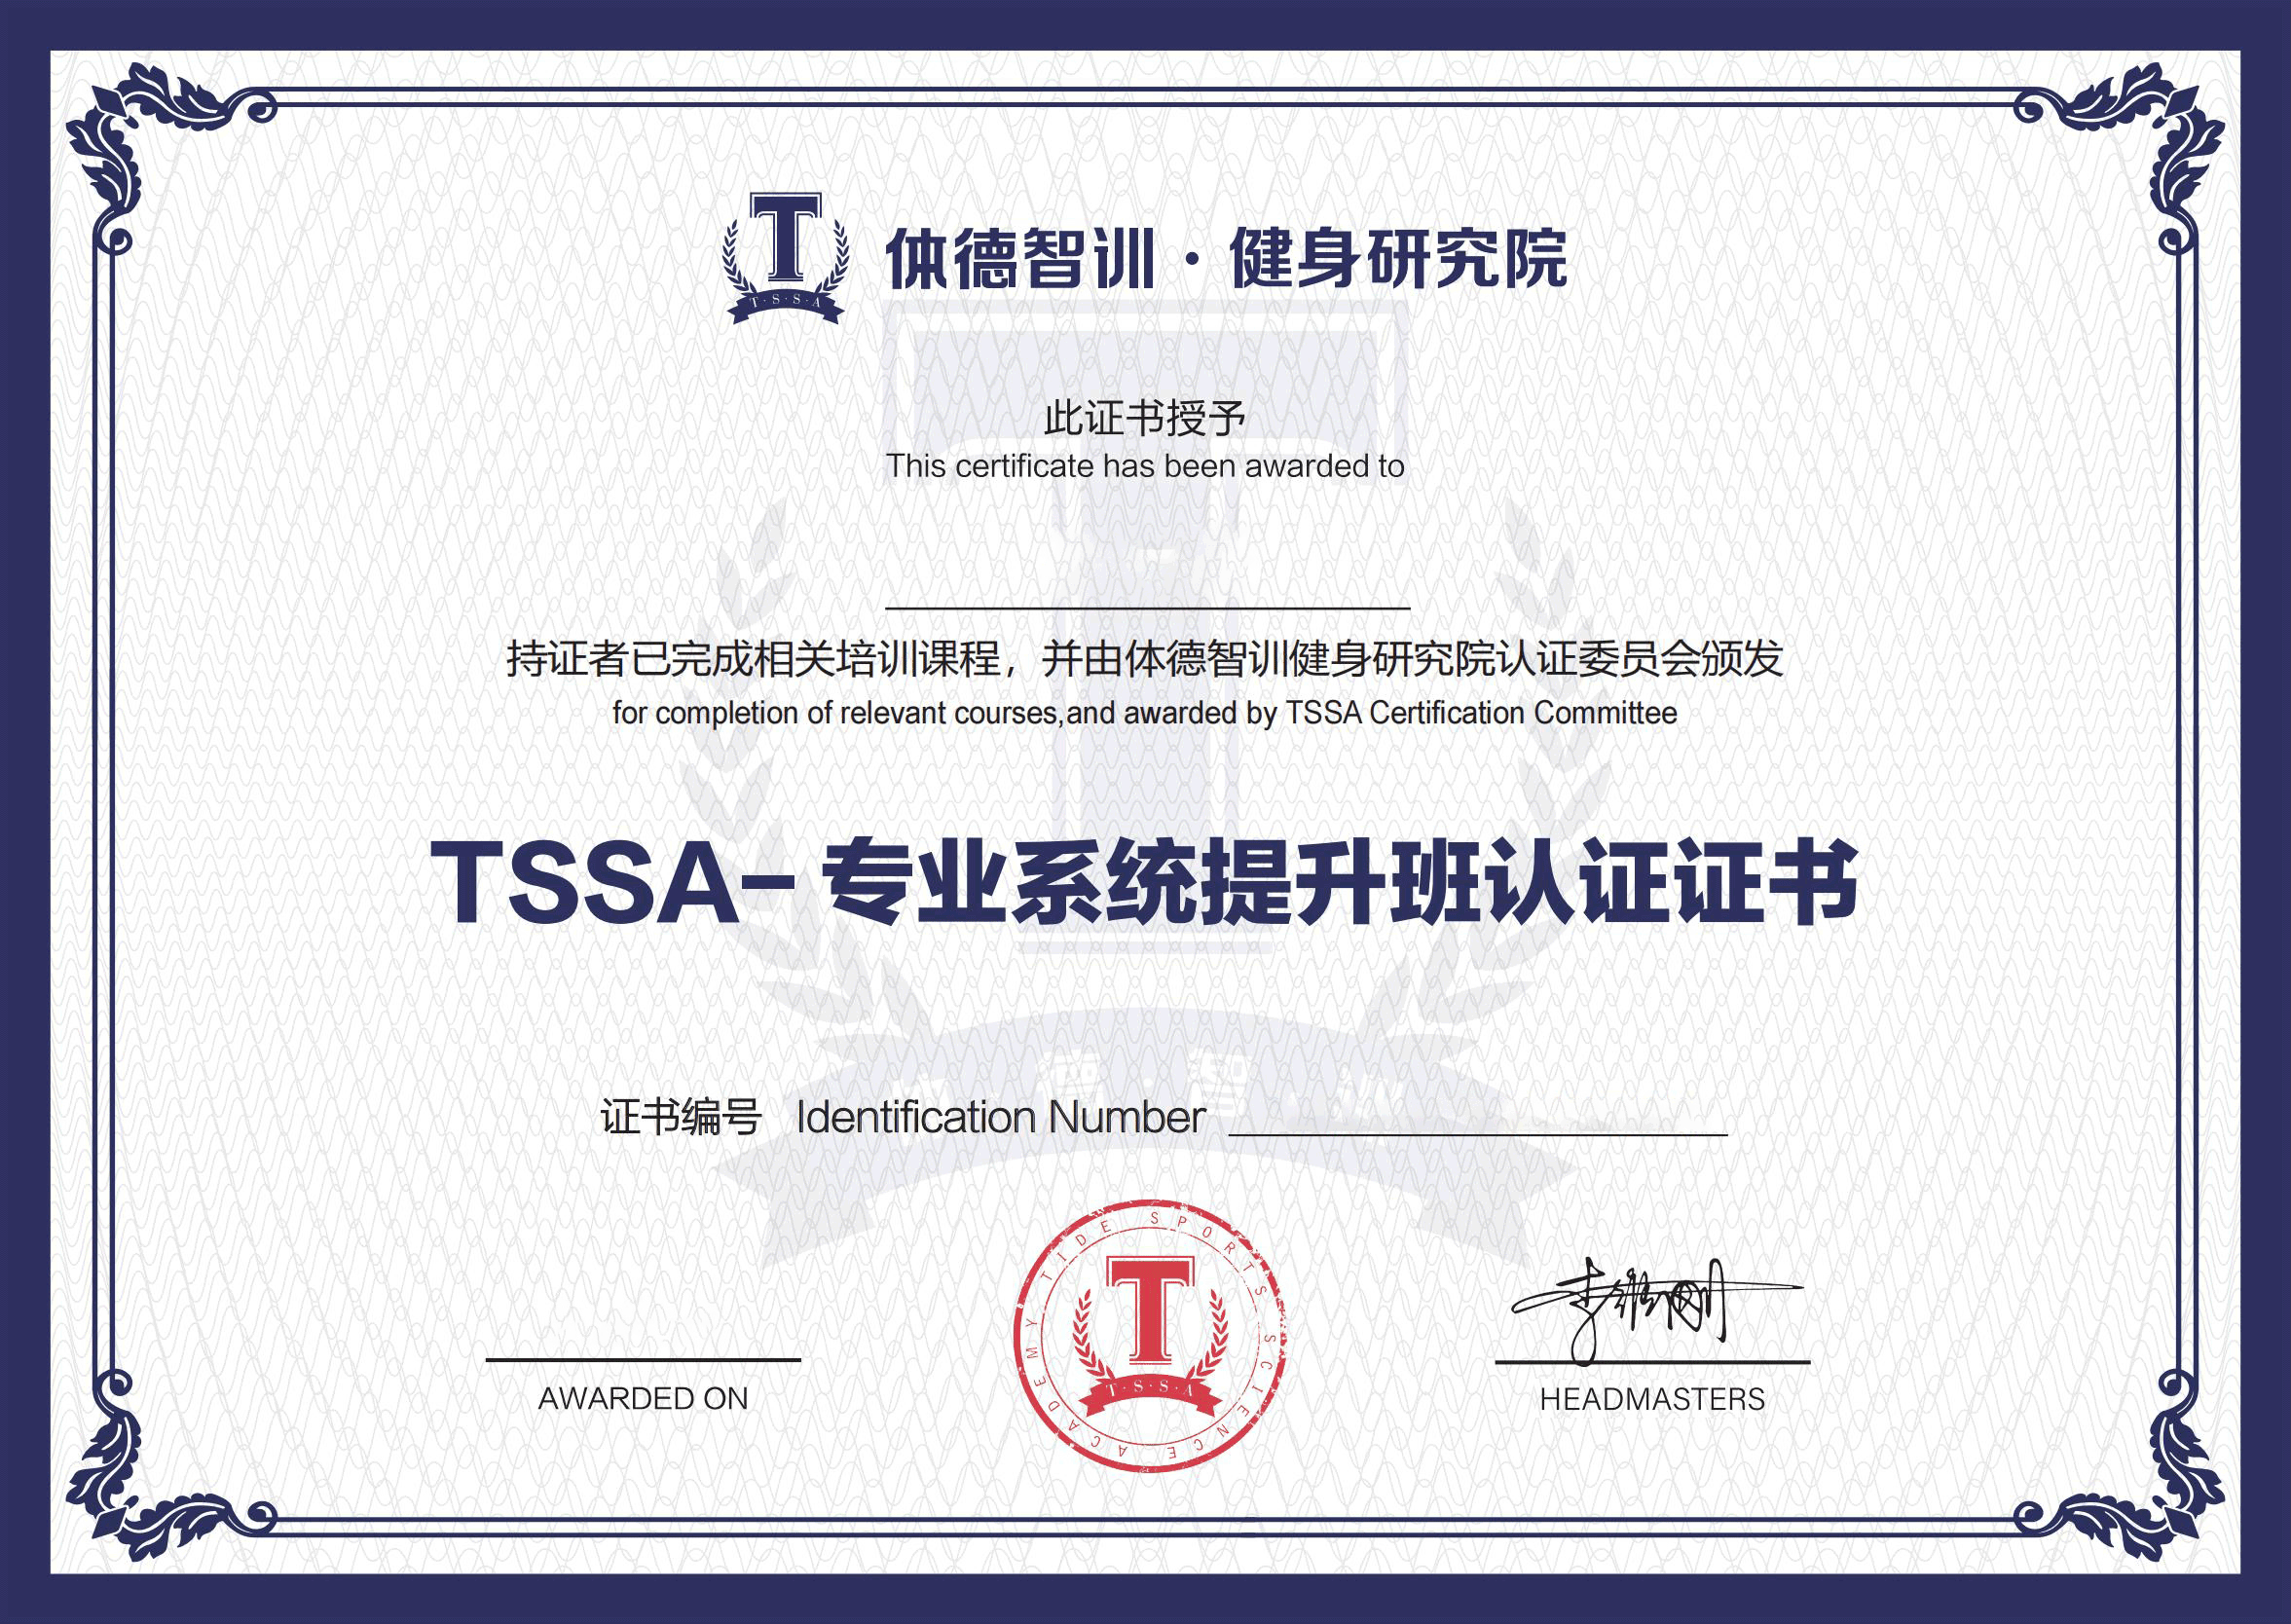 TSSA-专业系统提升班认证证书